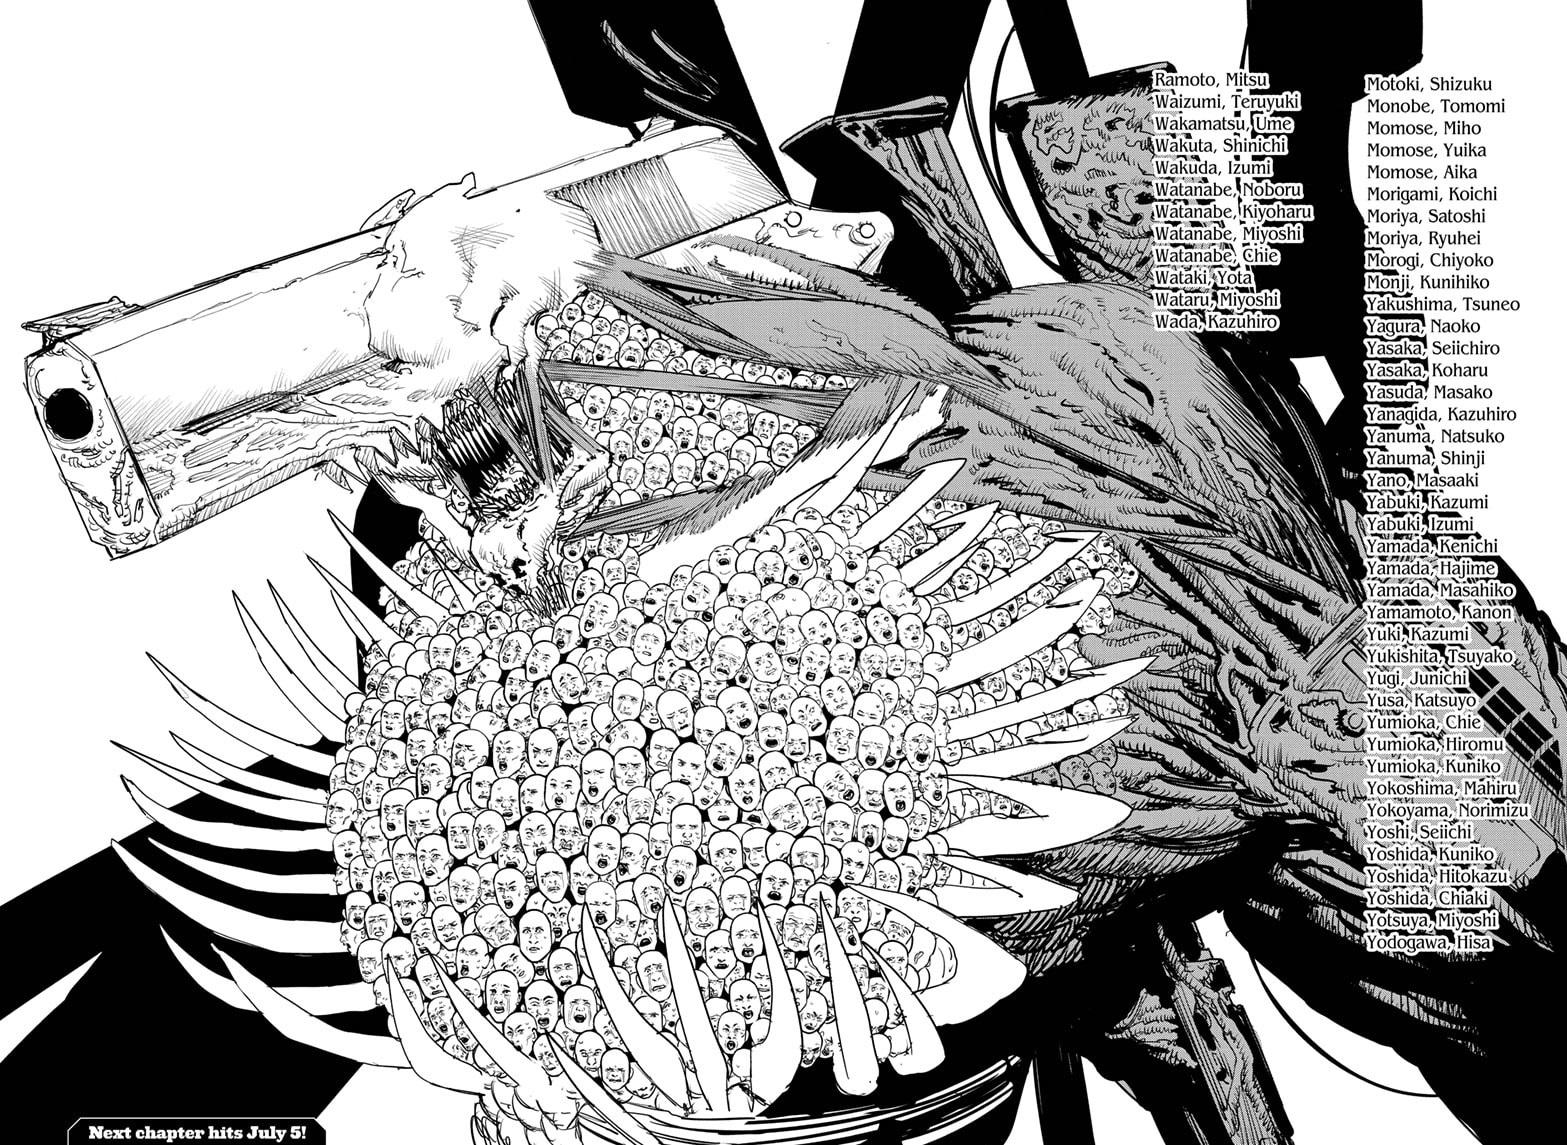 Chainsaw Man Manga Chapter - 75 - image 3